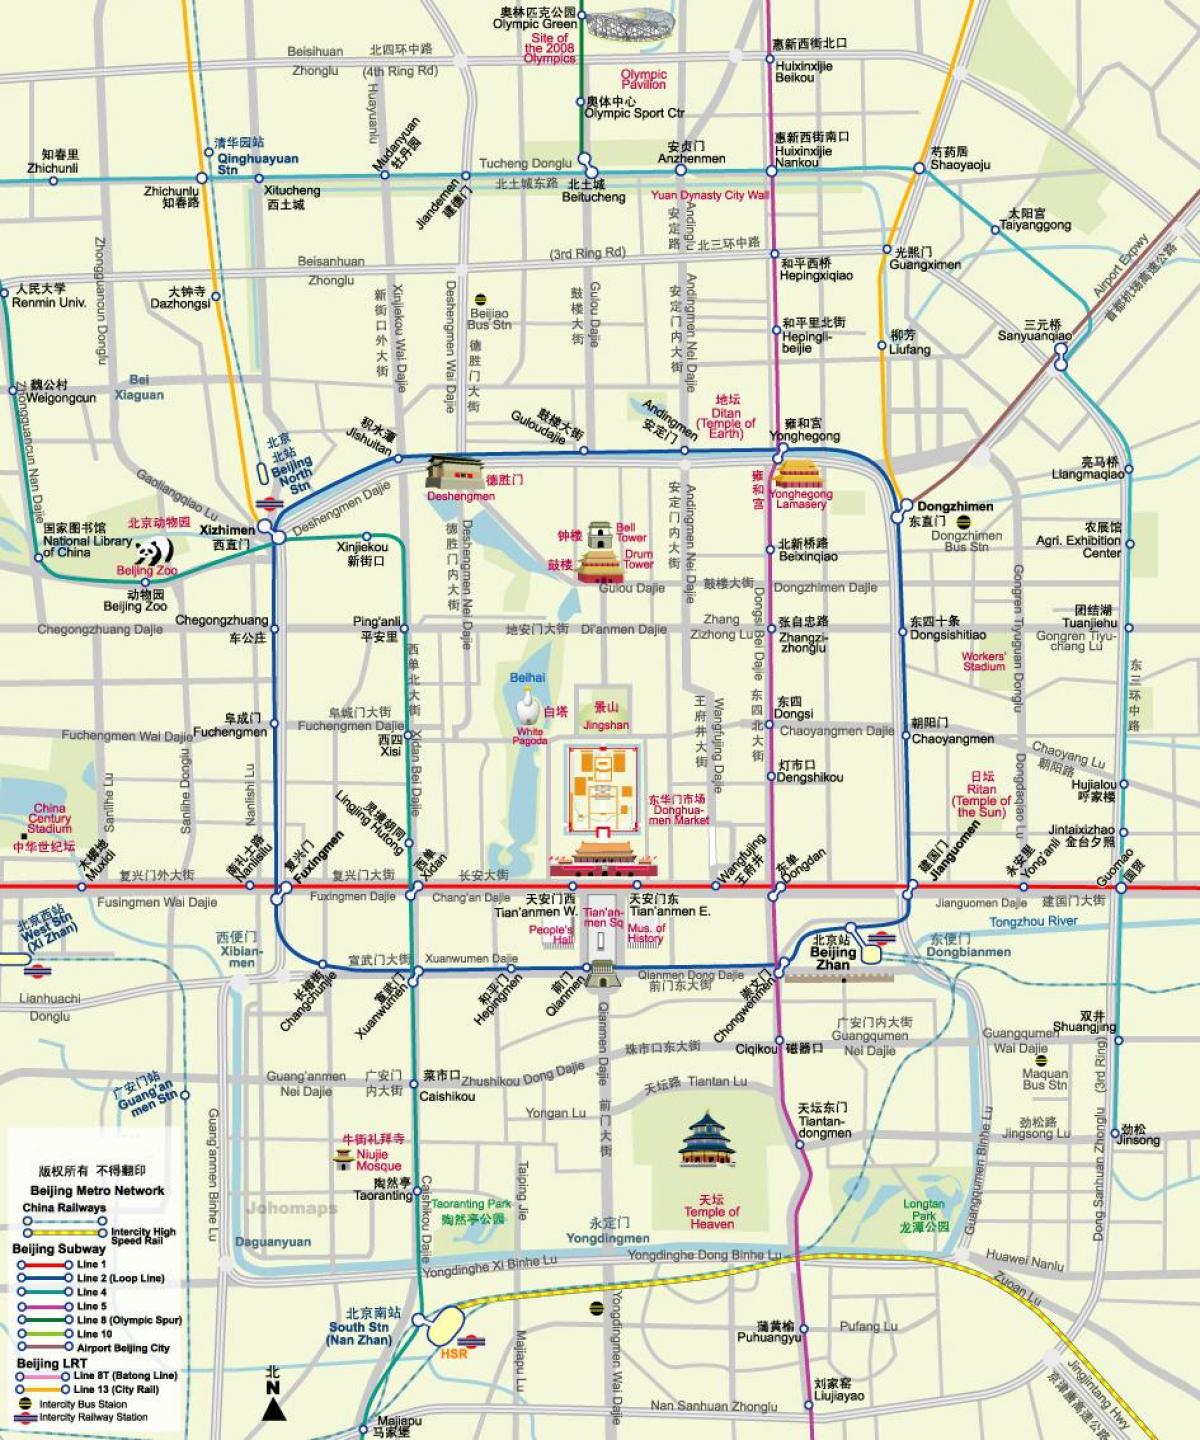 kaart van Beijing subway map met toeristische attracties